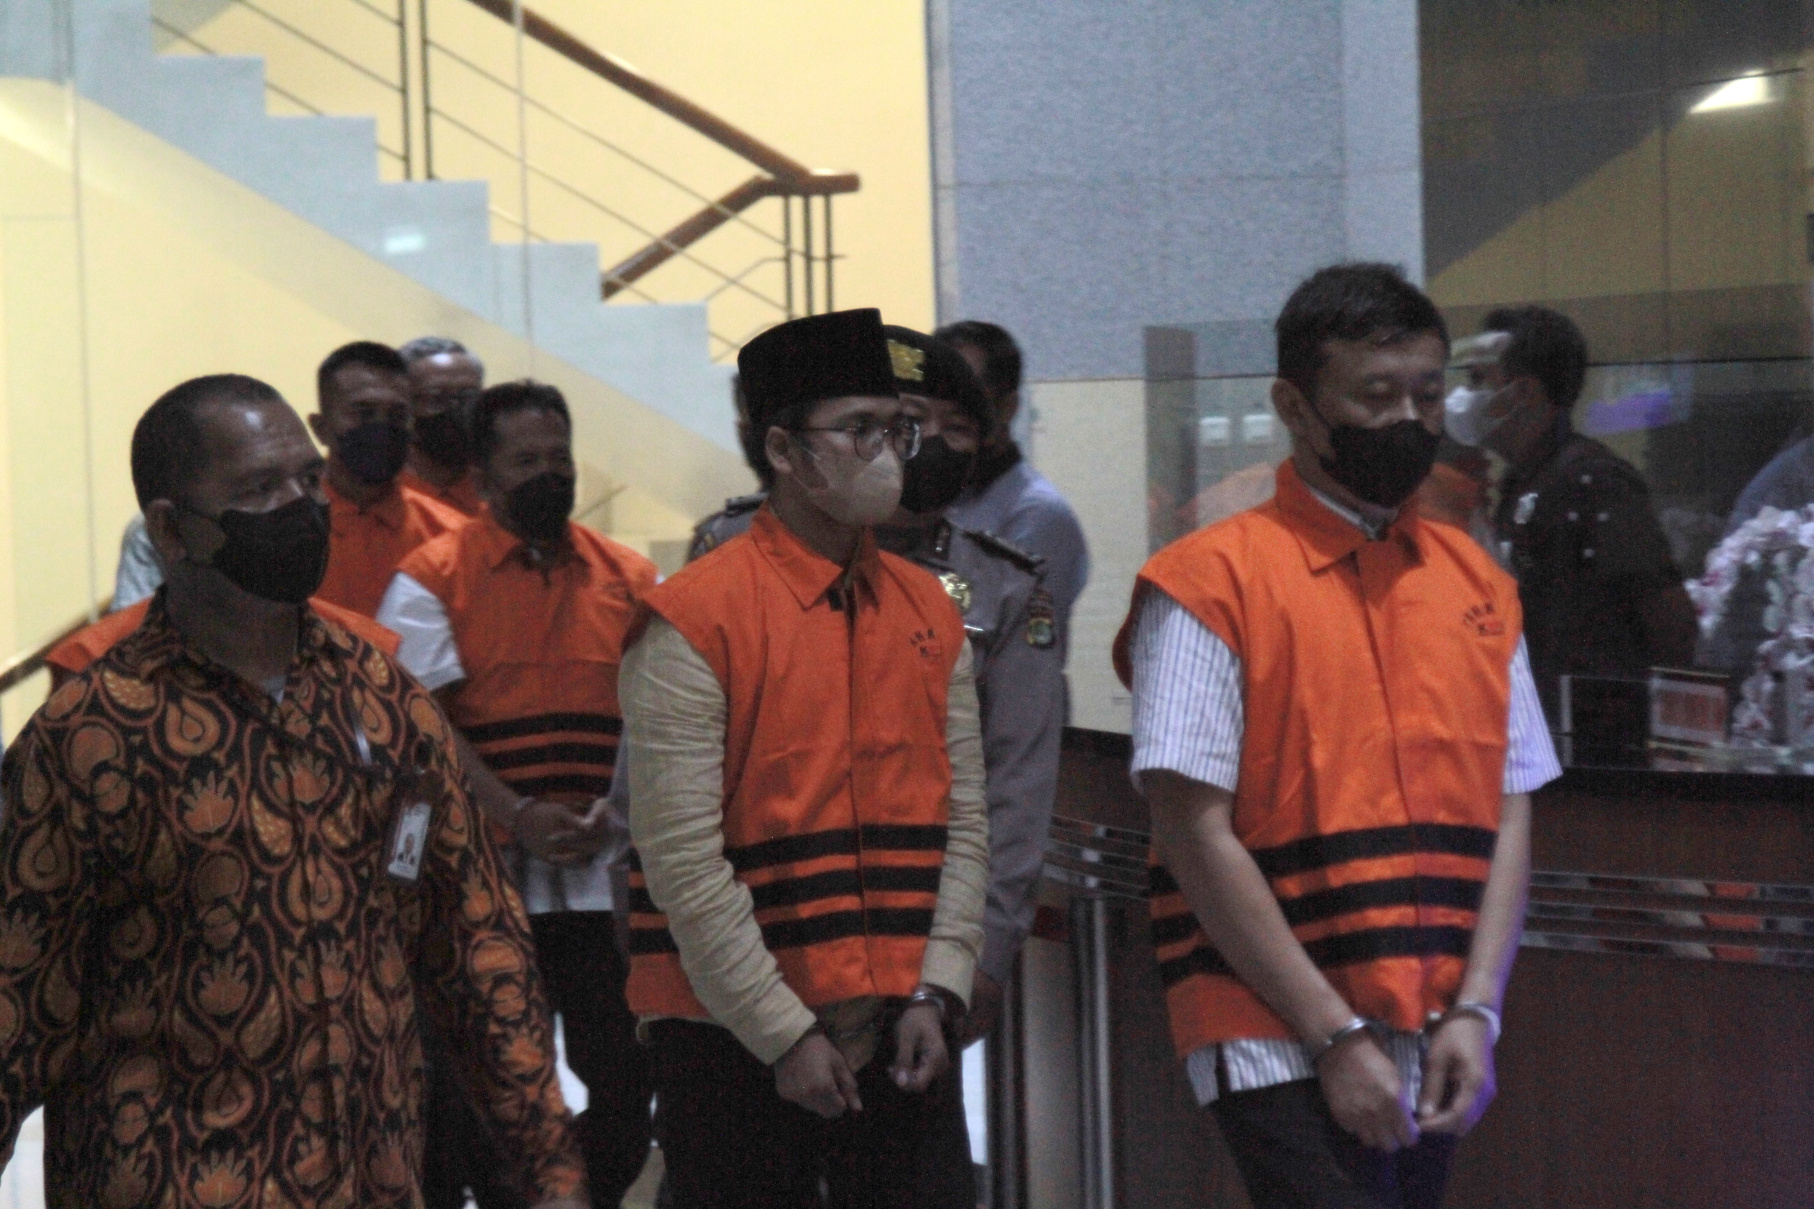 KPK resmi melakukan penahanan terhadap Bupati Bangkalan R. Abdul Latif Amin Imron dan lima tersangka bawahannya (Ashar/Sinpo.id)